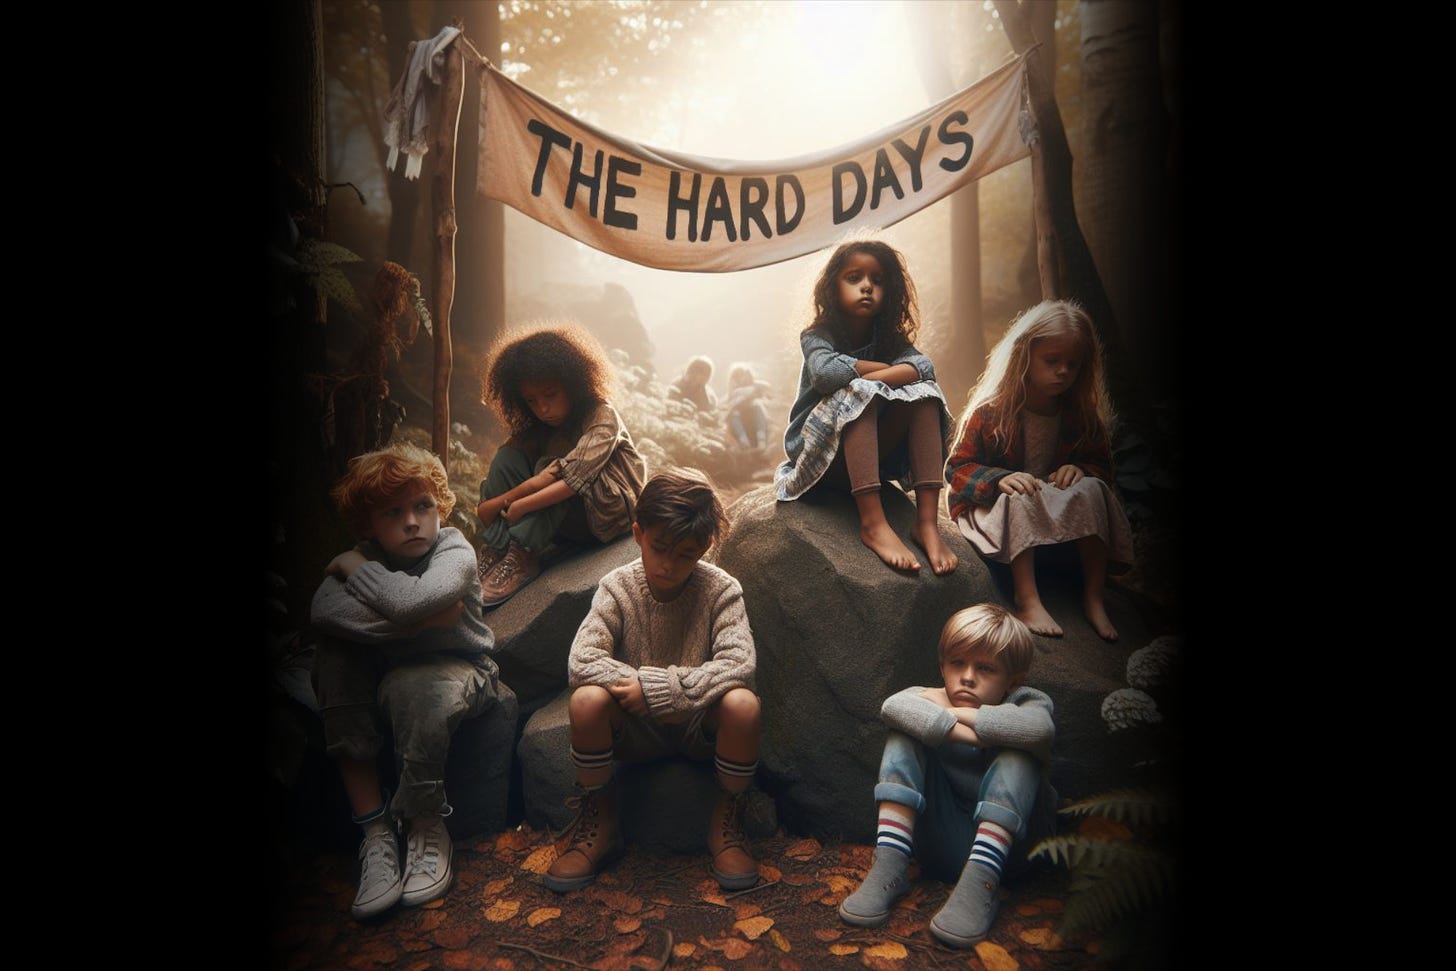 The hard days